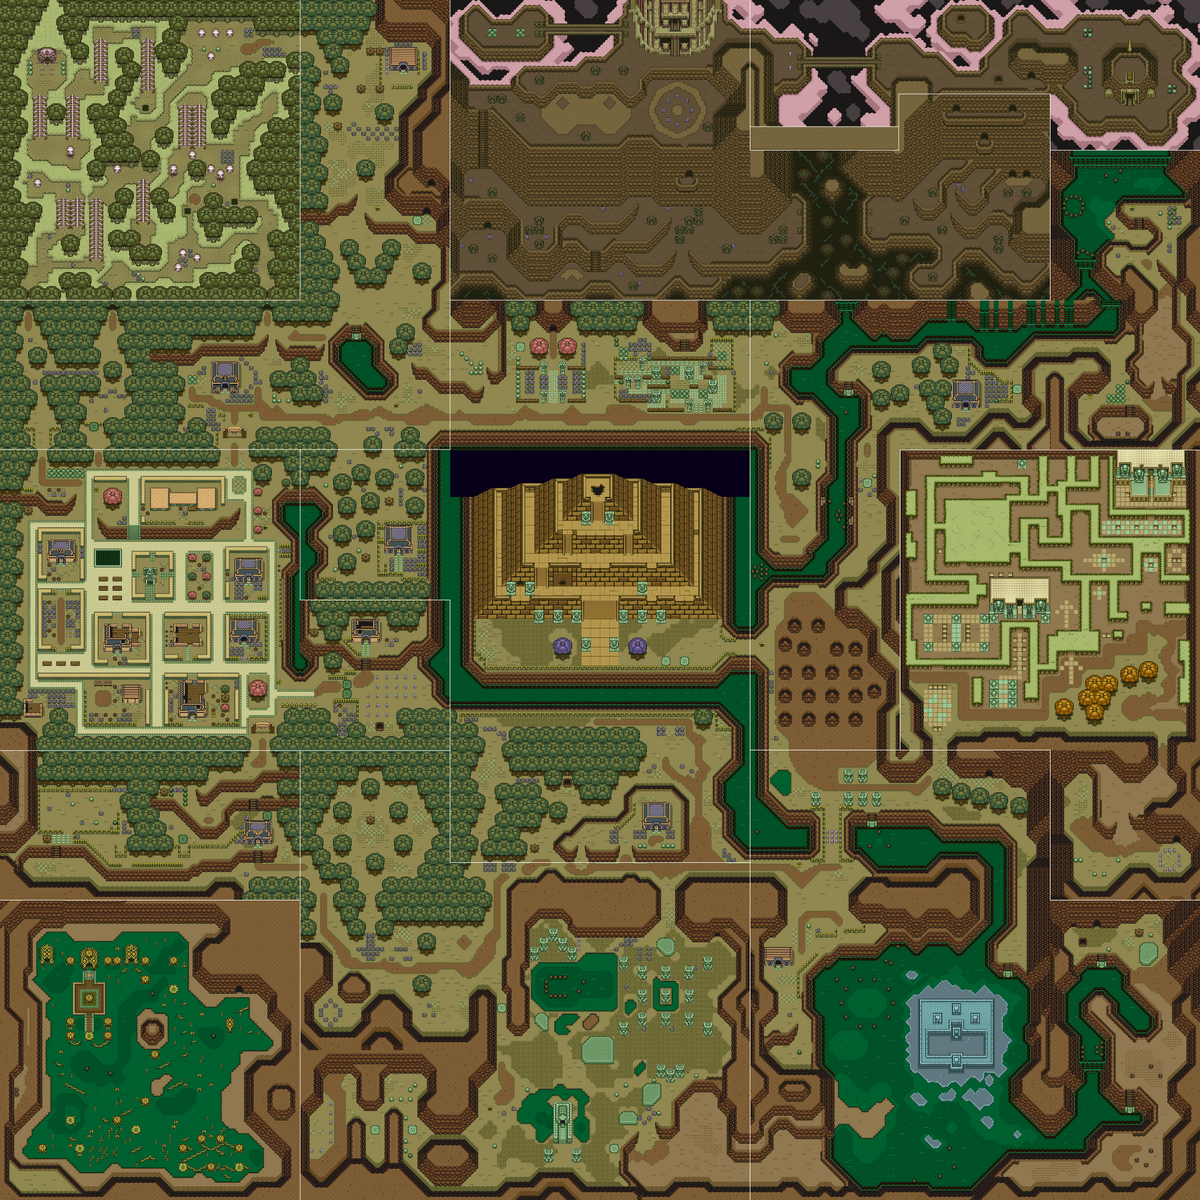 The Legend of Zelda: A Link Between Worlds - Zelda Dungeon Wiki, a The  Legend of Zelda wiki